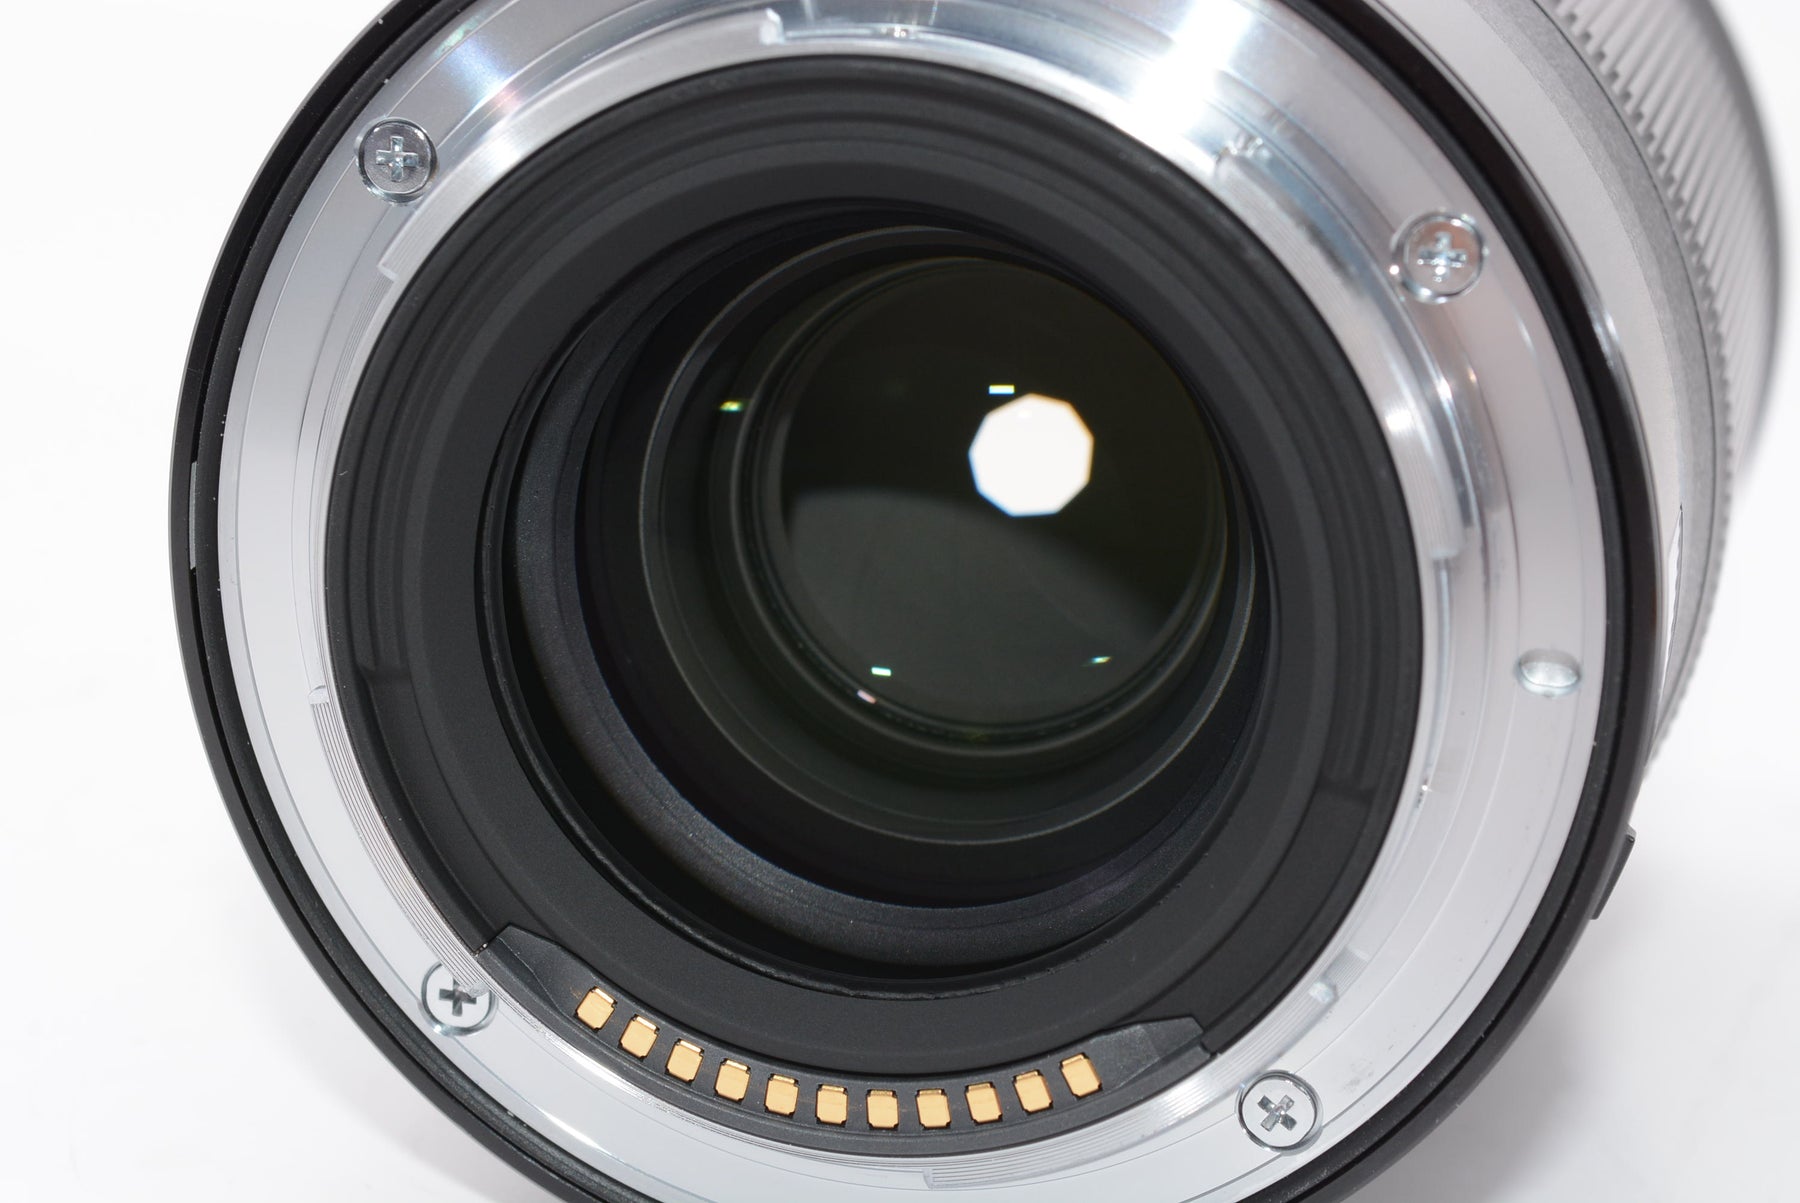 【外観特上級】Nikon 単焦点レンズ NIKKOR Z 85mm f/1.8S Zマウント フルサイズ対応 Sライン